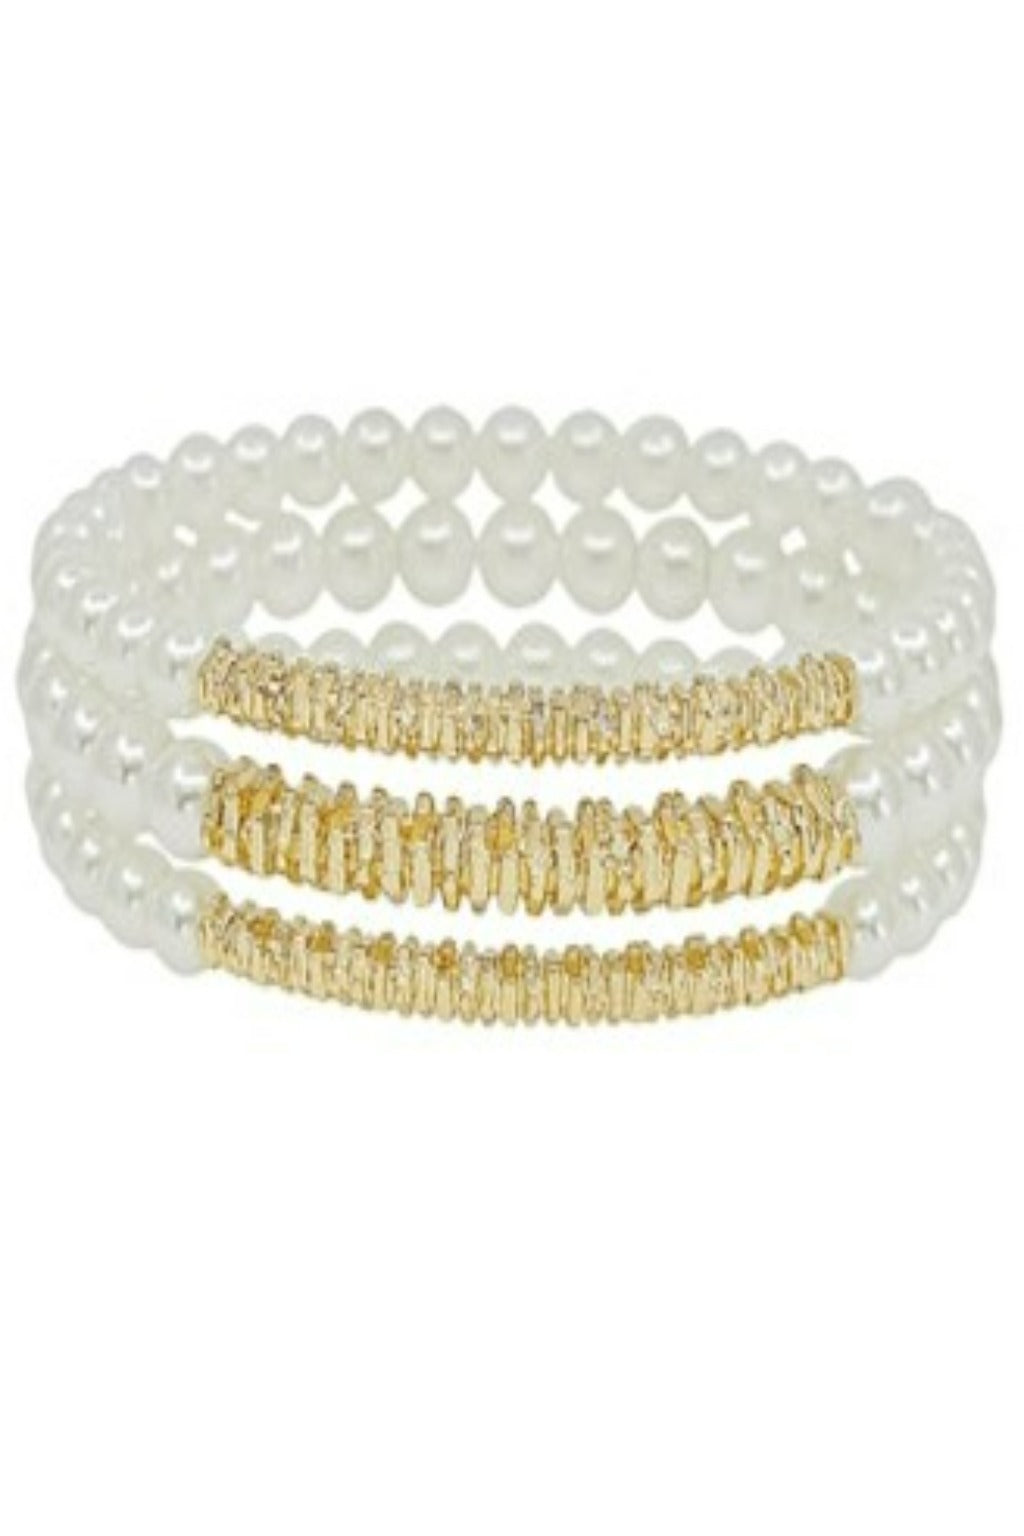 Pearl & Gold Stack Bracelets Set of 3